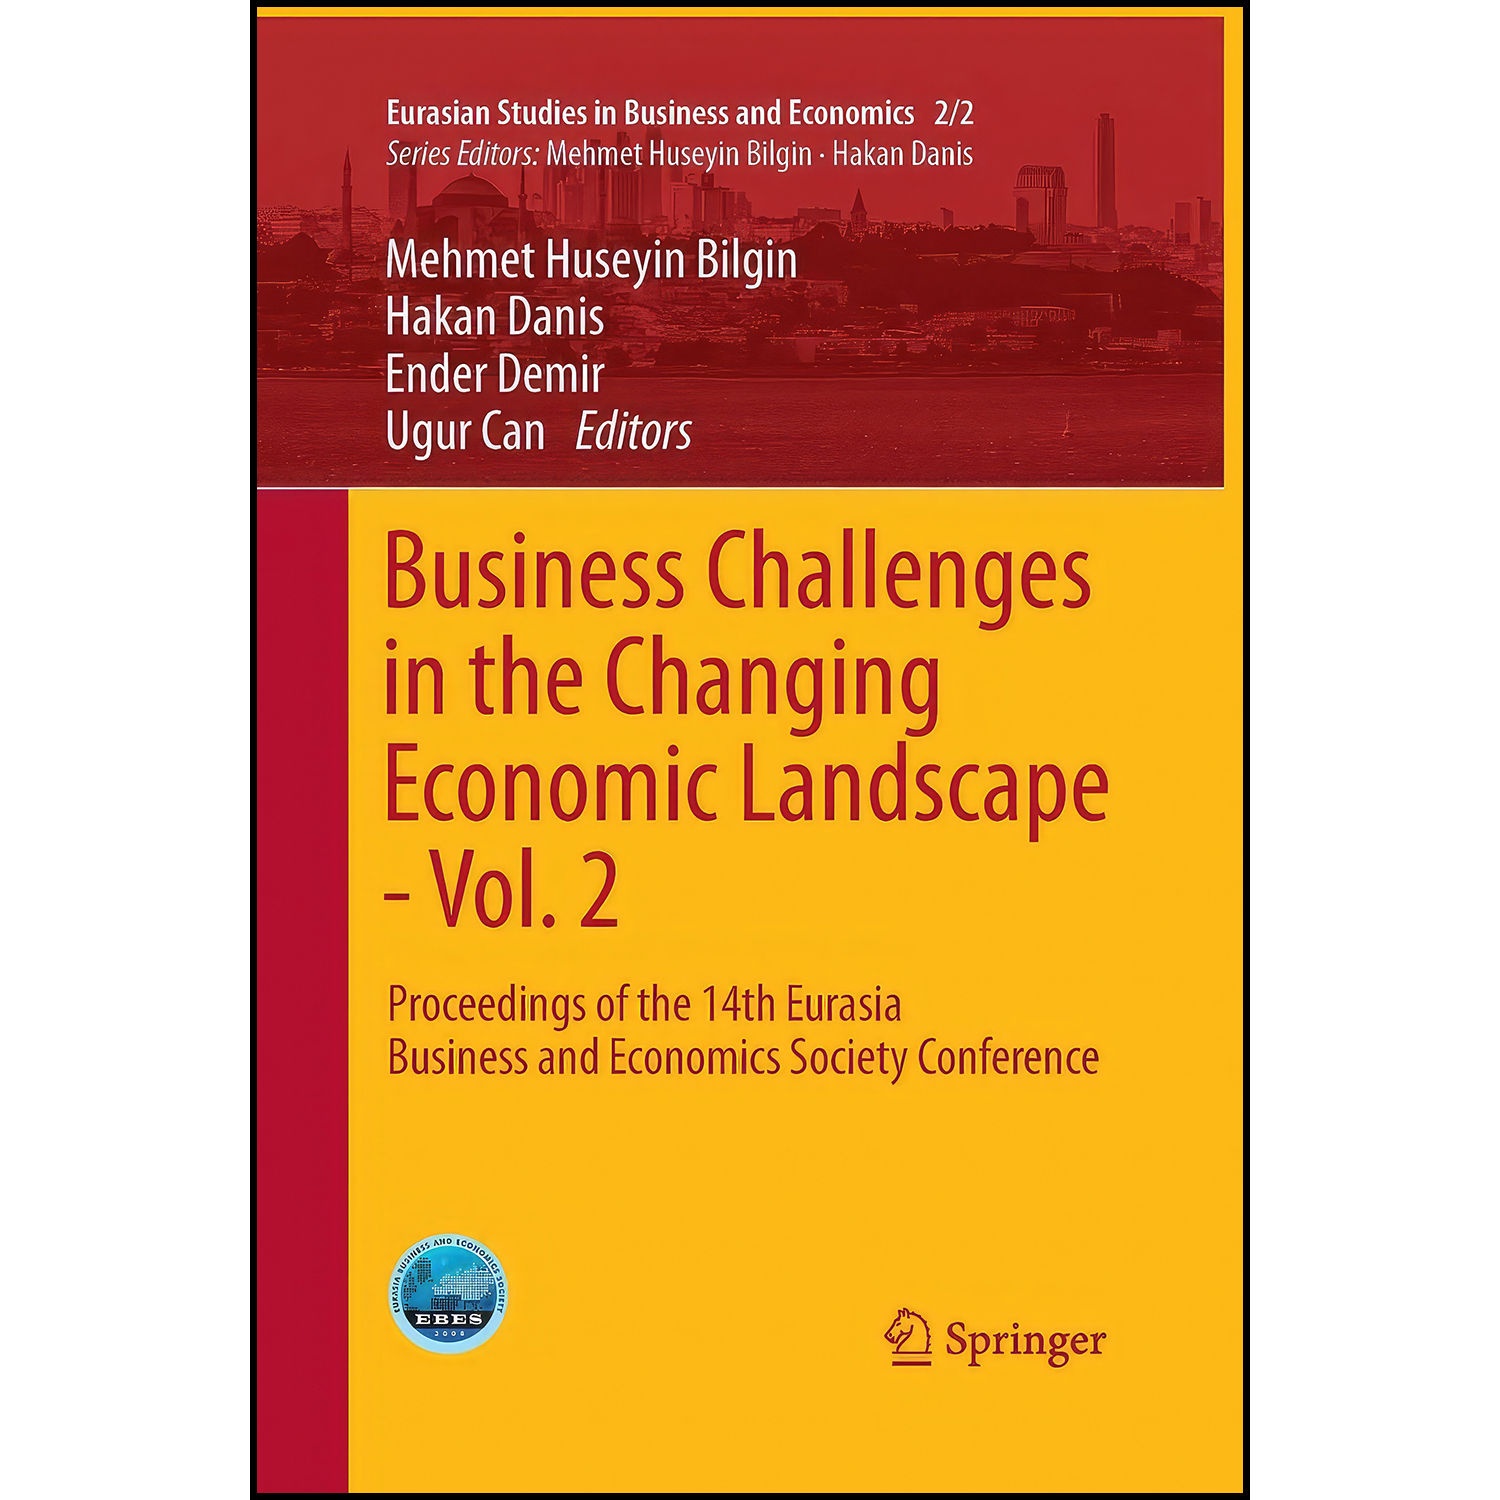 کتاب Business Challenges in the Changing Economic Landscape - Vol. 2 اثر جمعي از نويسندگان انتشارات Springer